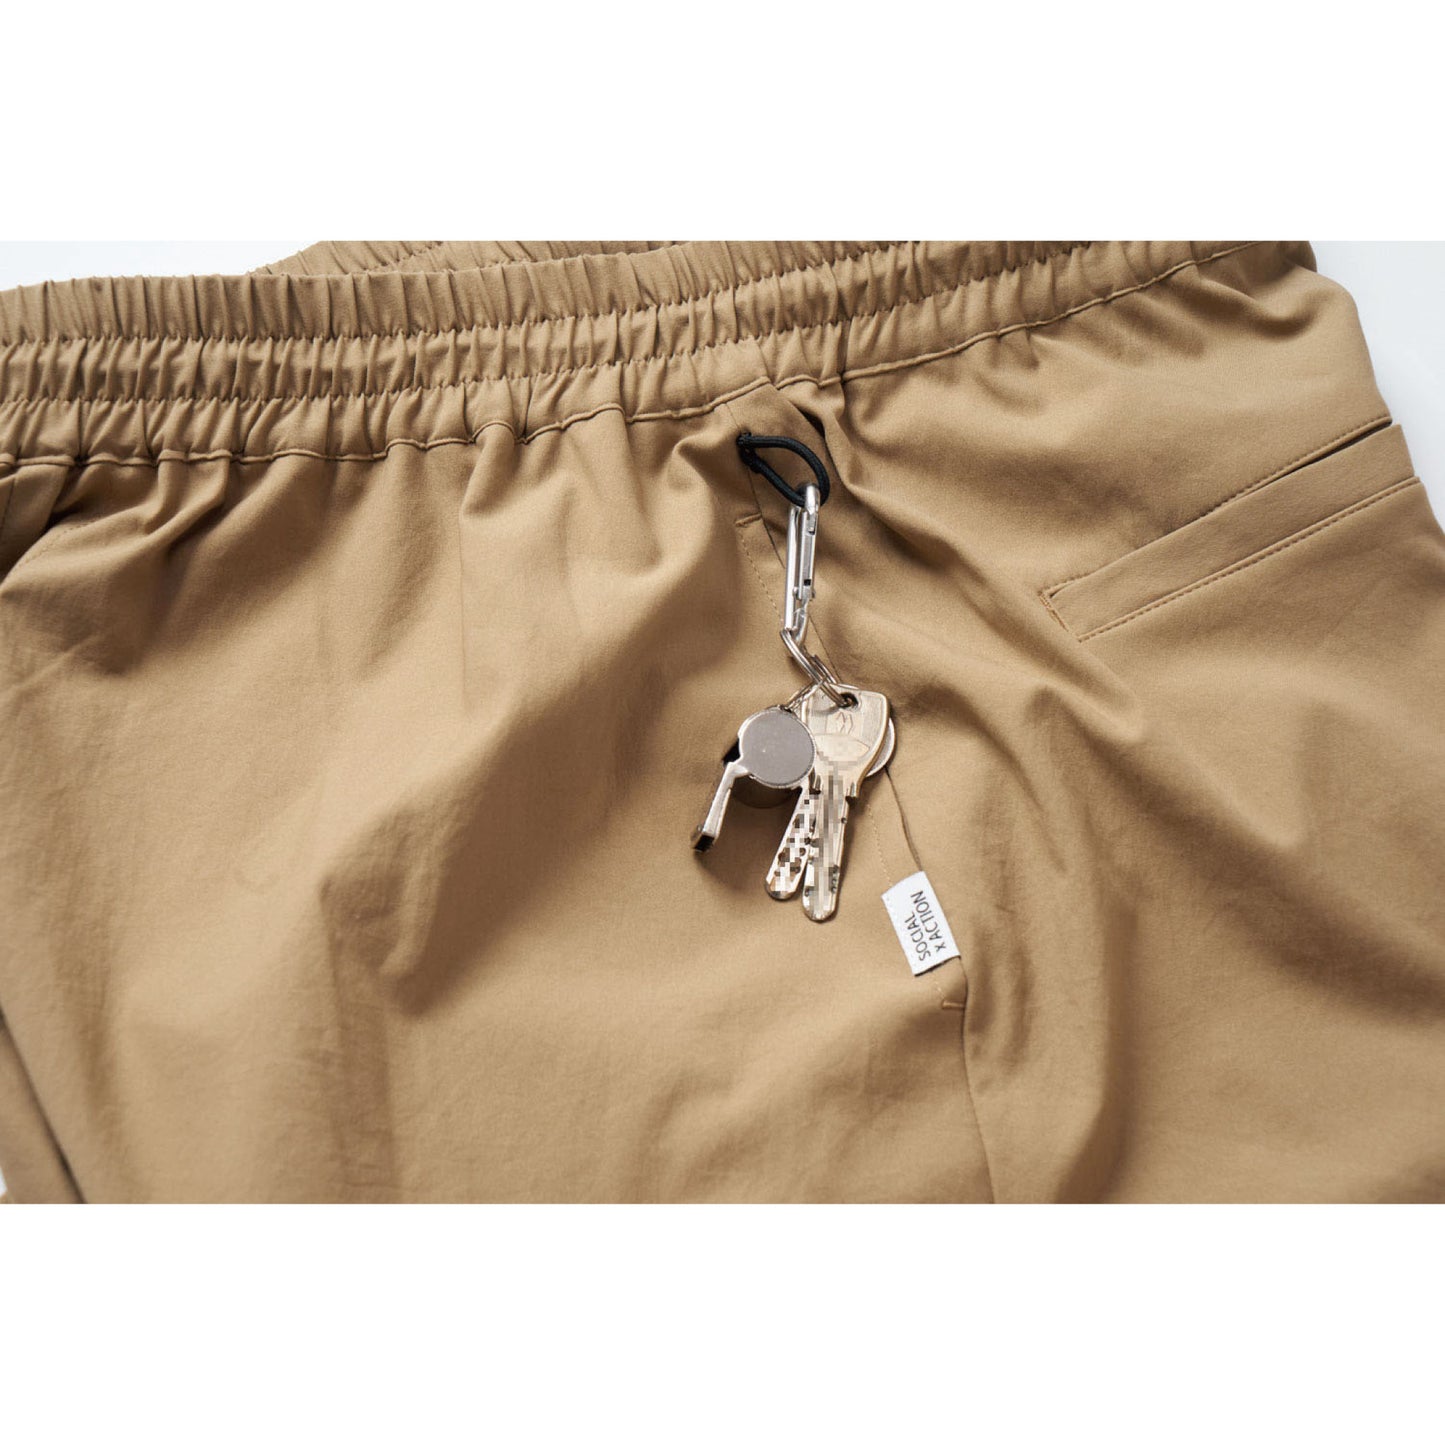 Cfef's Pants「SOURCE」color:BEIGE/ベージュ